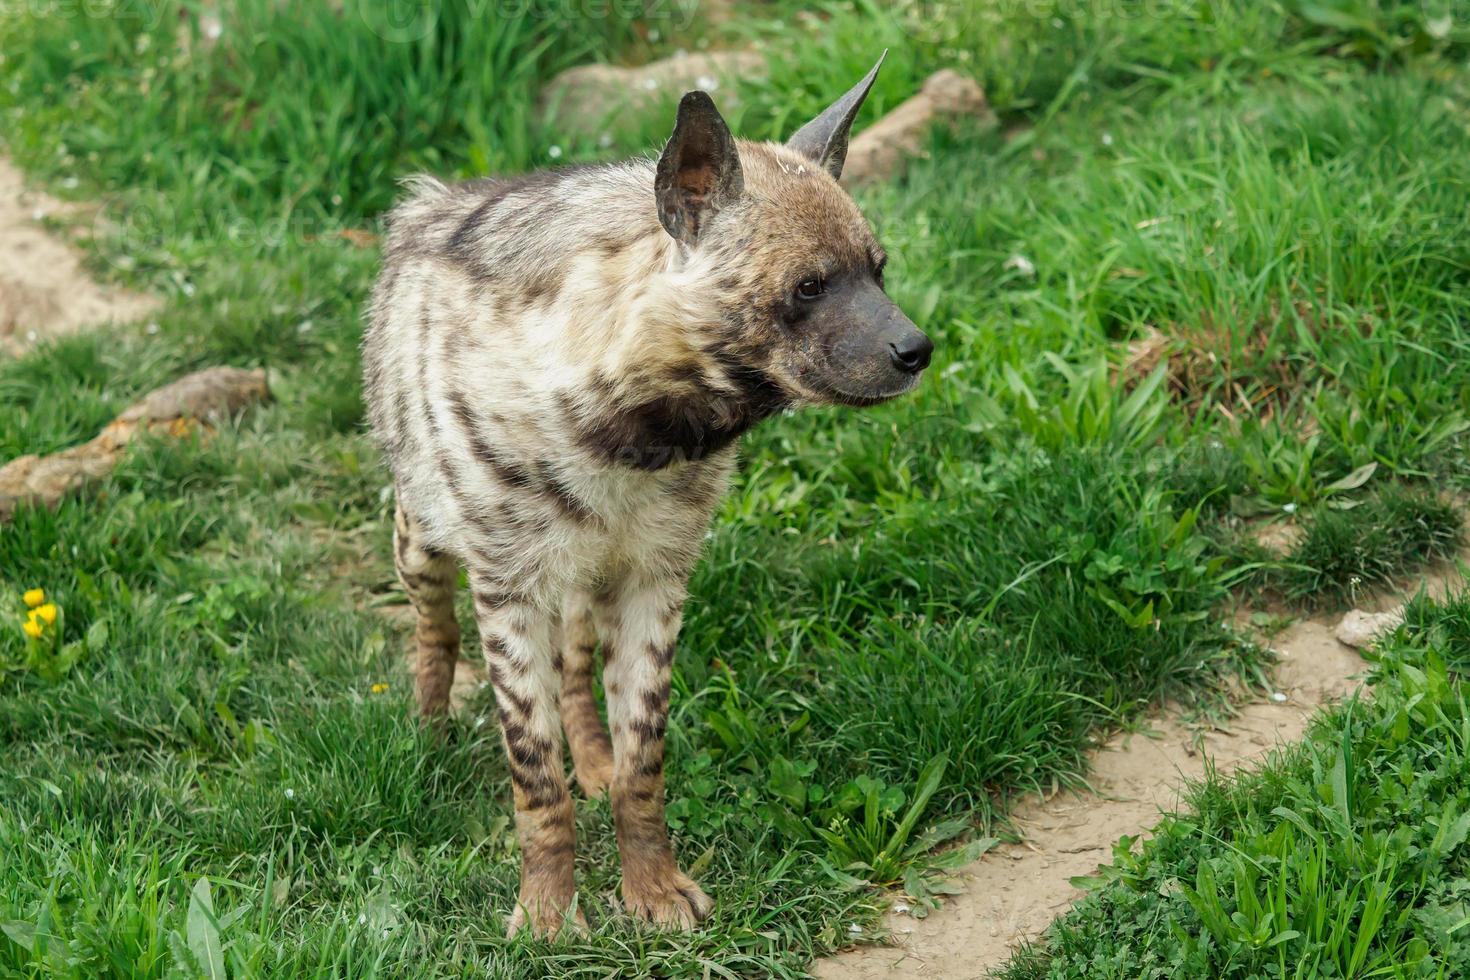 Striped hyena, Hyaena hyaena sultana photo